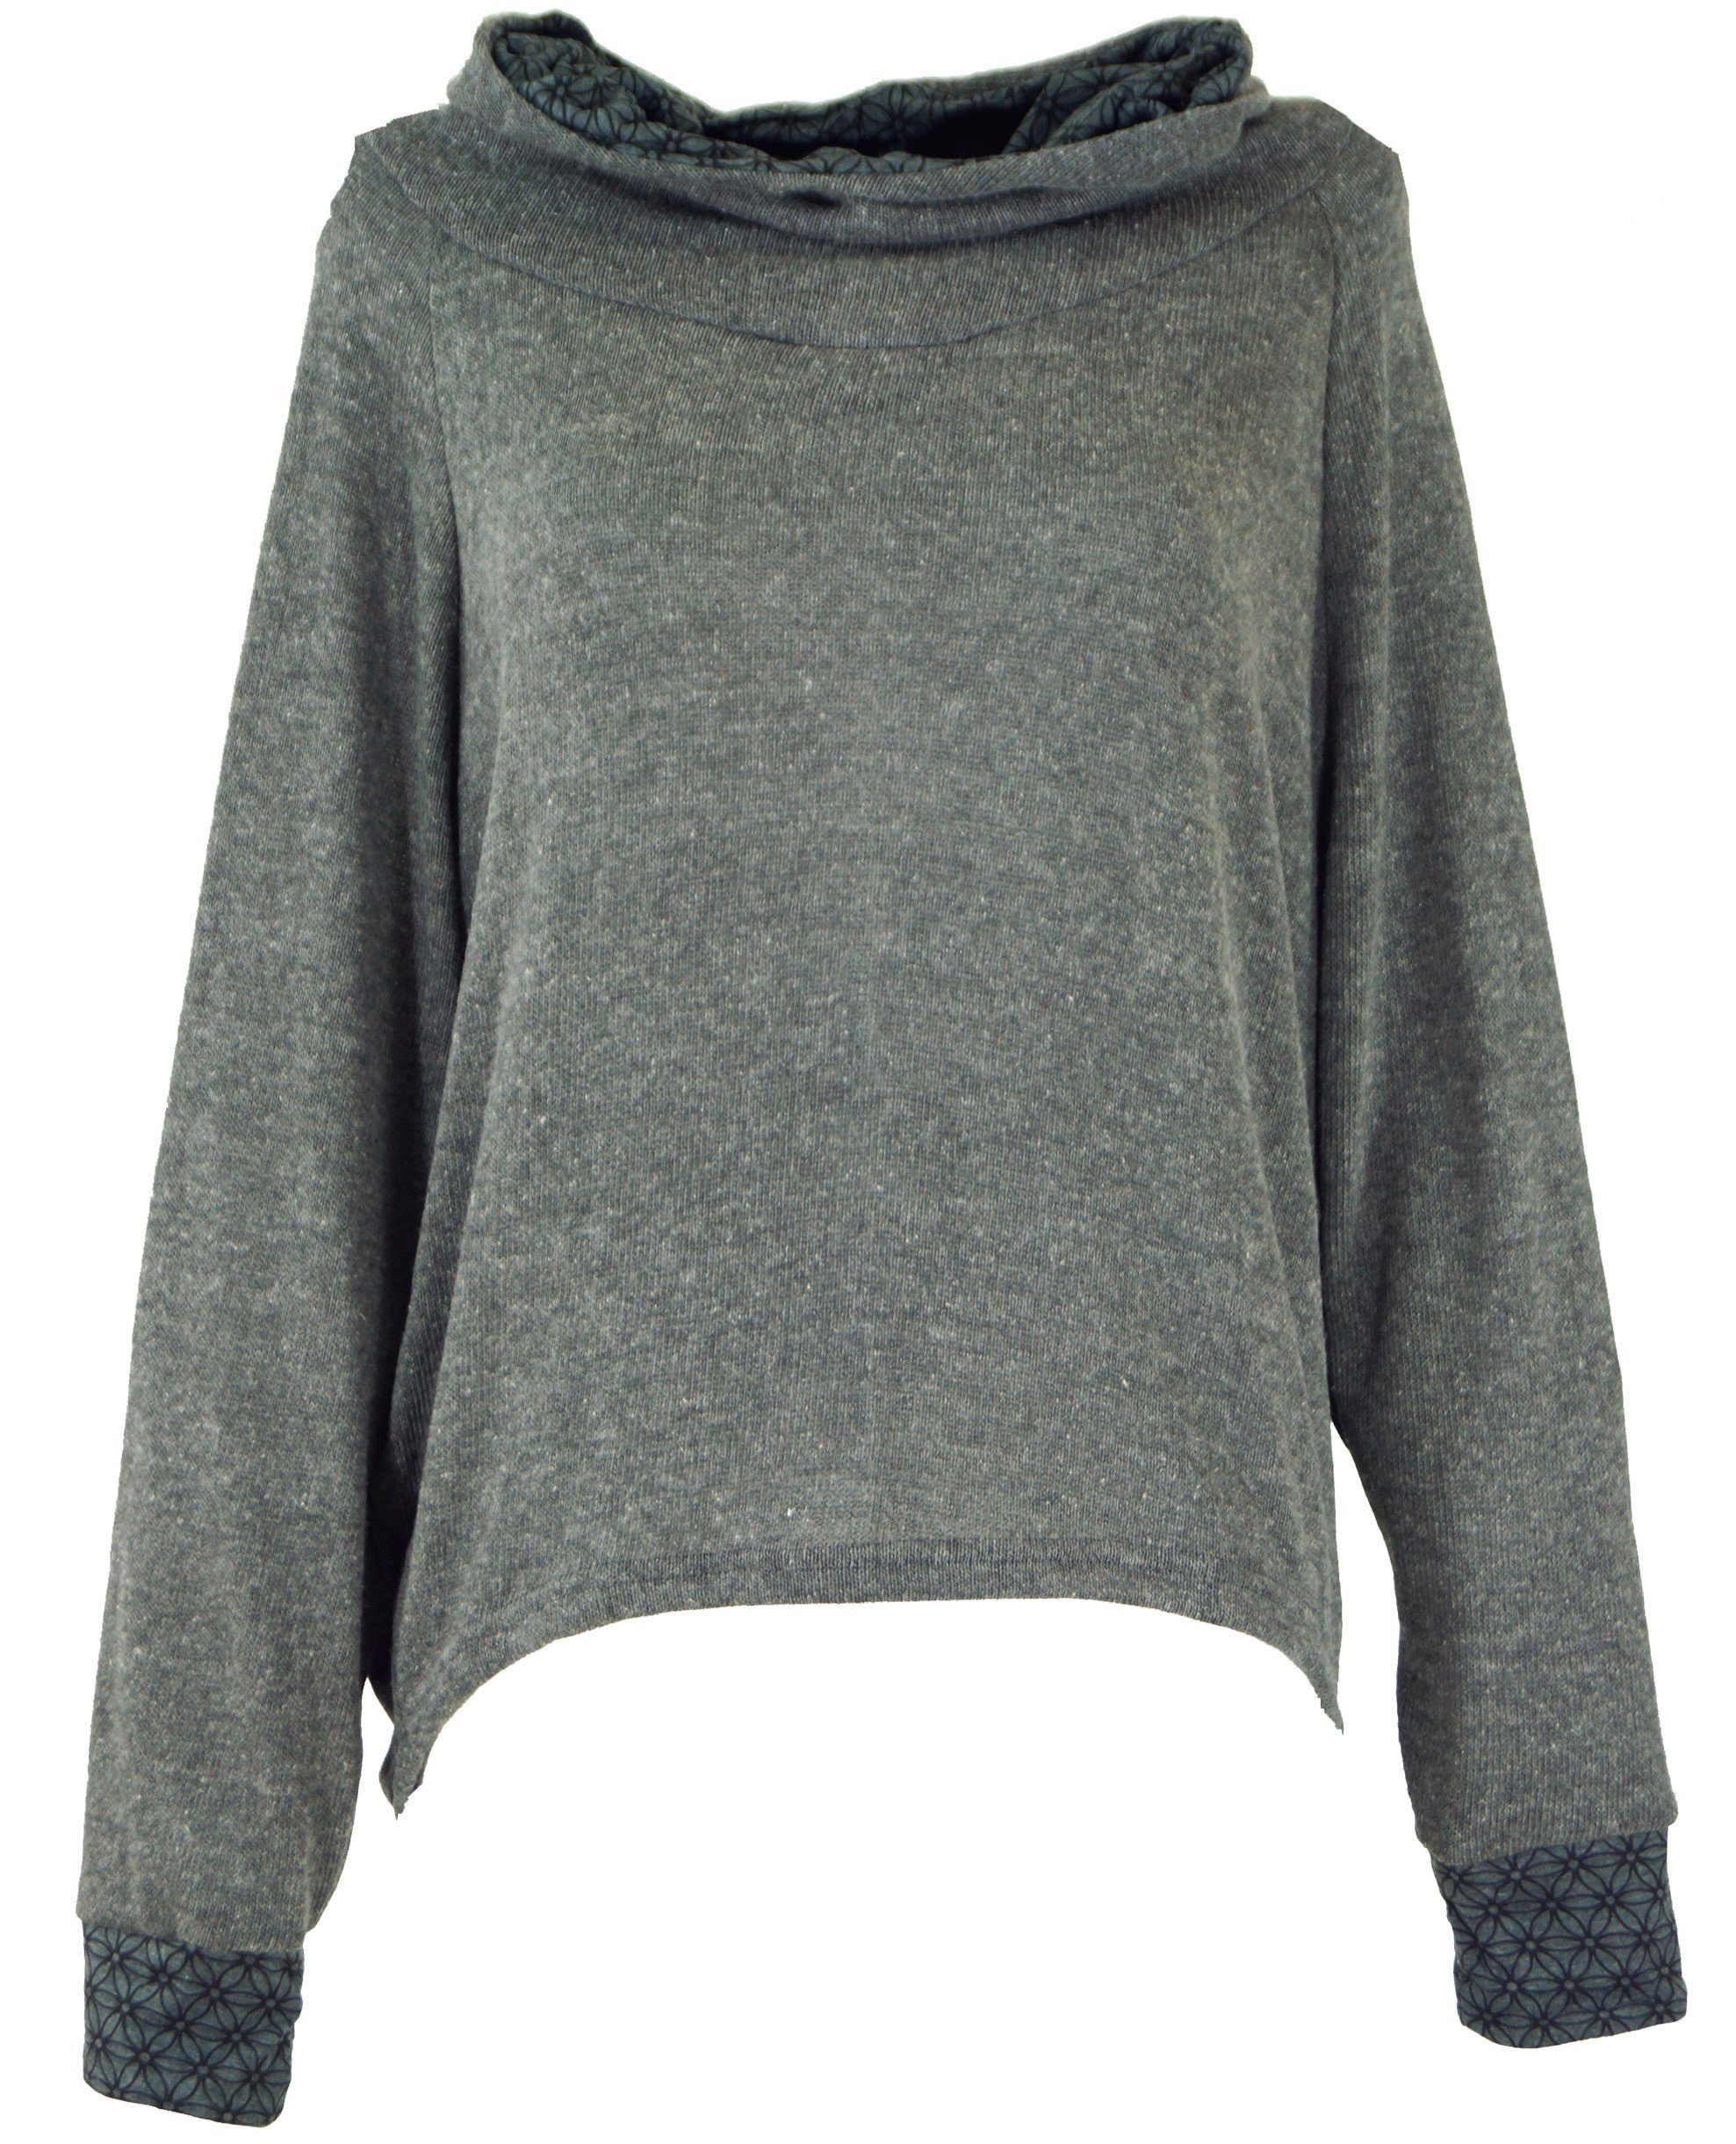 Guru-Shop Longsleeve Pullover, Sweatshirt, Hoody, Bekleidung grau alternative Kapuzenpullover 